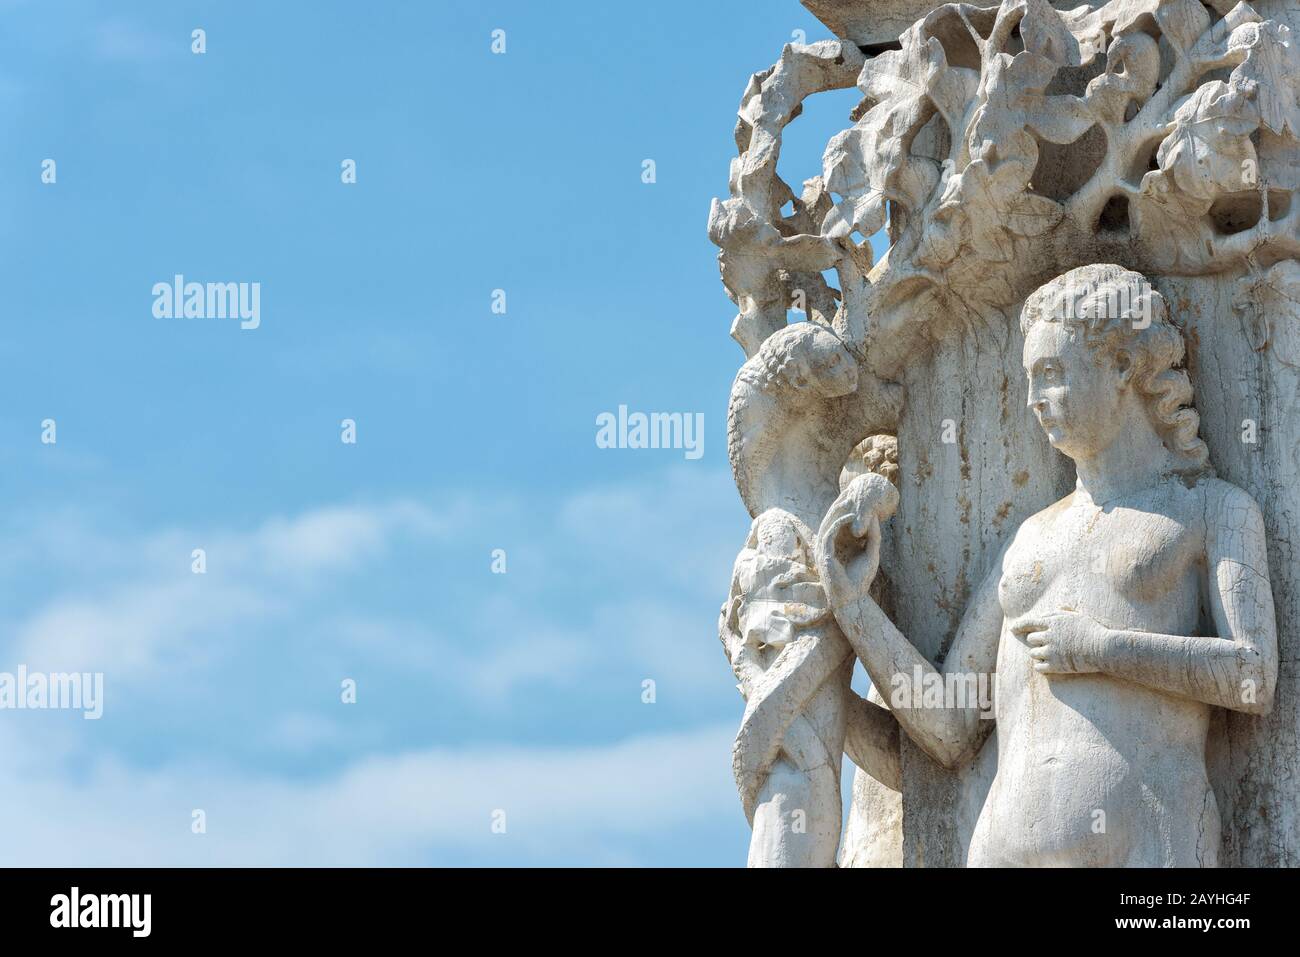 Palazzo Ducale Dettaglio, Venezia, Italia. E' uno dei principali punti di riferimento di Venezia. Statua della vigilia biblica sulla facciata del Palazzo Ducale. R Foto Stock